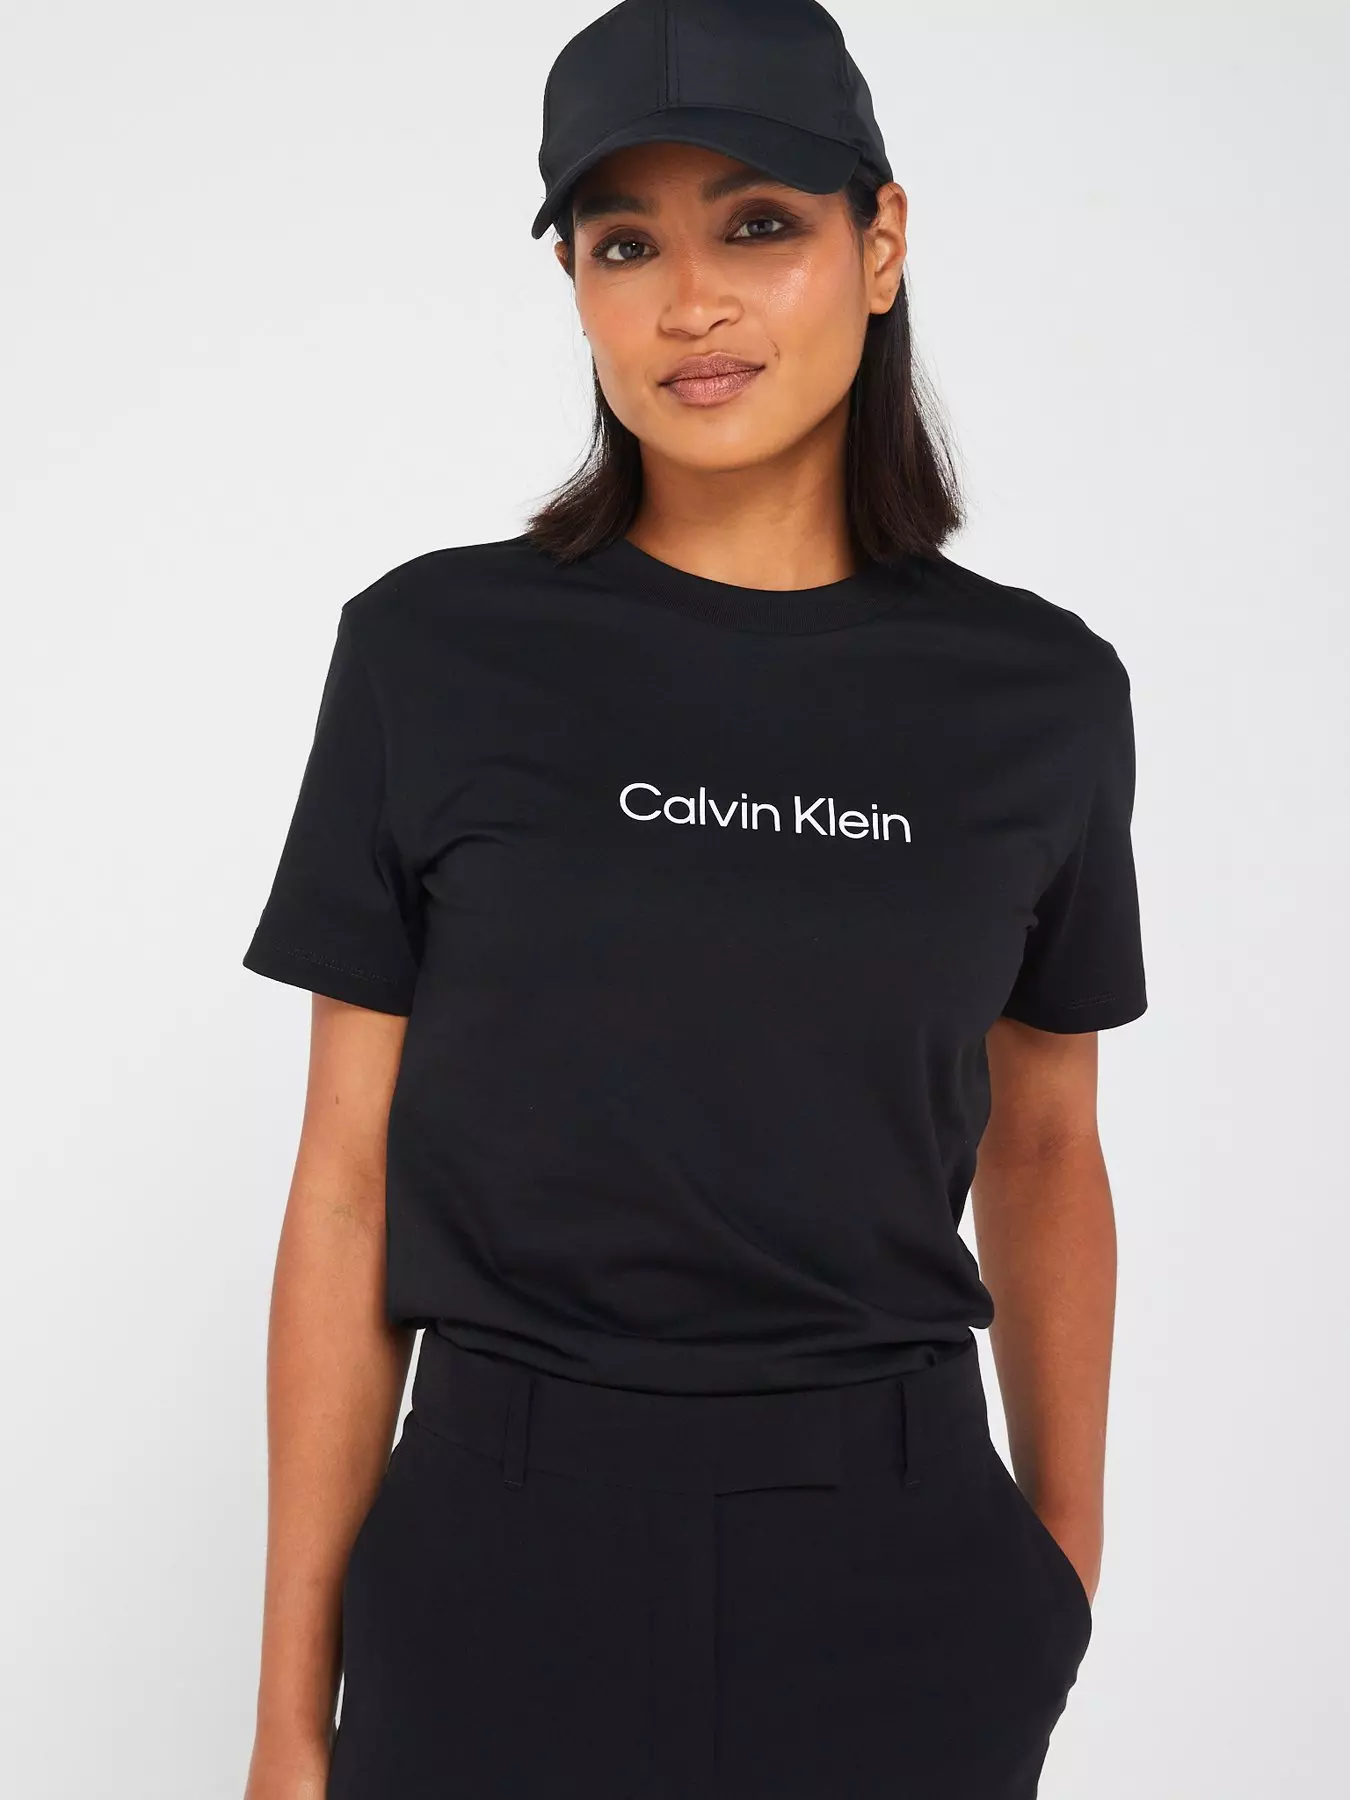 Calvin klein | Tops & t-shirts | Women